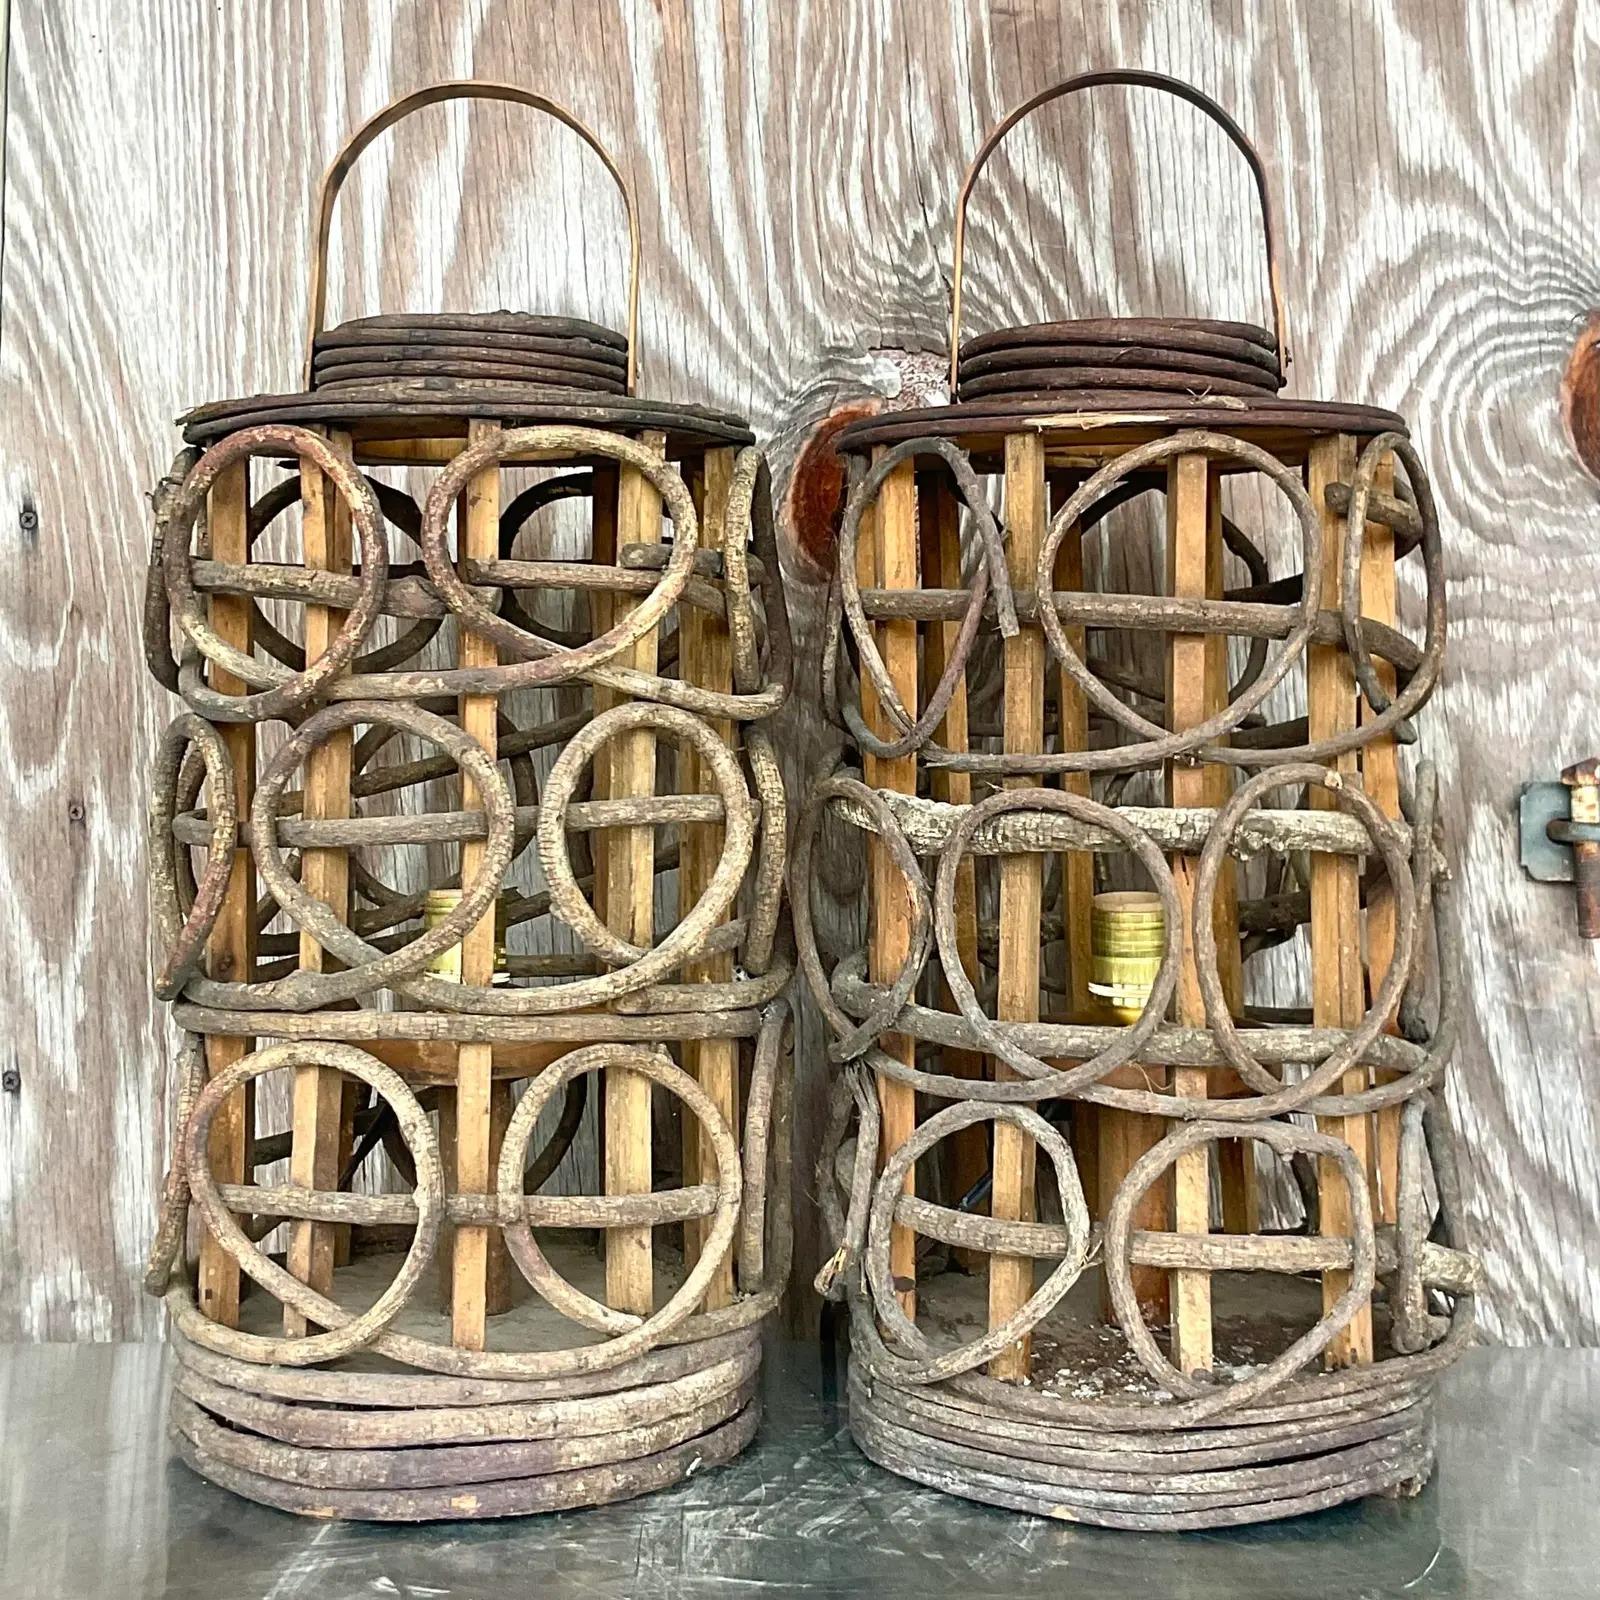 Une fabuleuse paire de lampes de table Boho vintage. Fabriqué à partir d'une vigne torsadée en forme de lanterne chic. Entièrement restauré avec tous les nouveaux câbles et accessoires. Acquis d'une propriété de Palm Beach.

Les lampes sont en